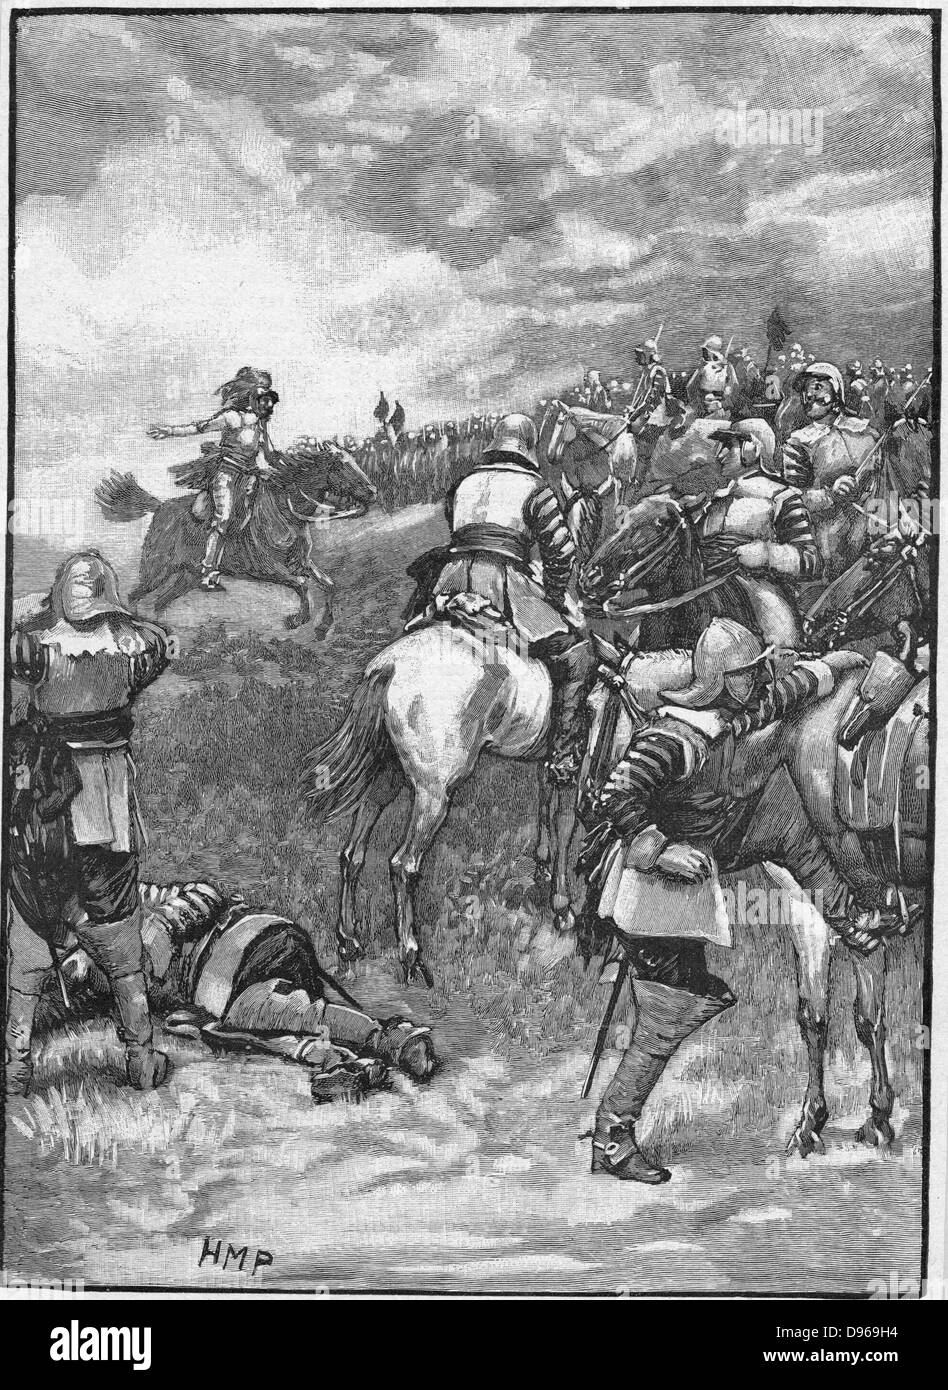 Englisch Bürgerkriege: Schlacht bei Naseby vom 14. Juni 1645. Charles I, der versucht, seine Truppen für eine endgültige Gebühr gegen Cromwells Truppen zu sammeln. Nach dem 19. Jahrhundert Gravur. Stockfoto